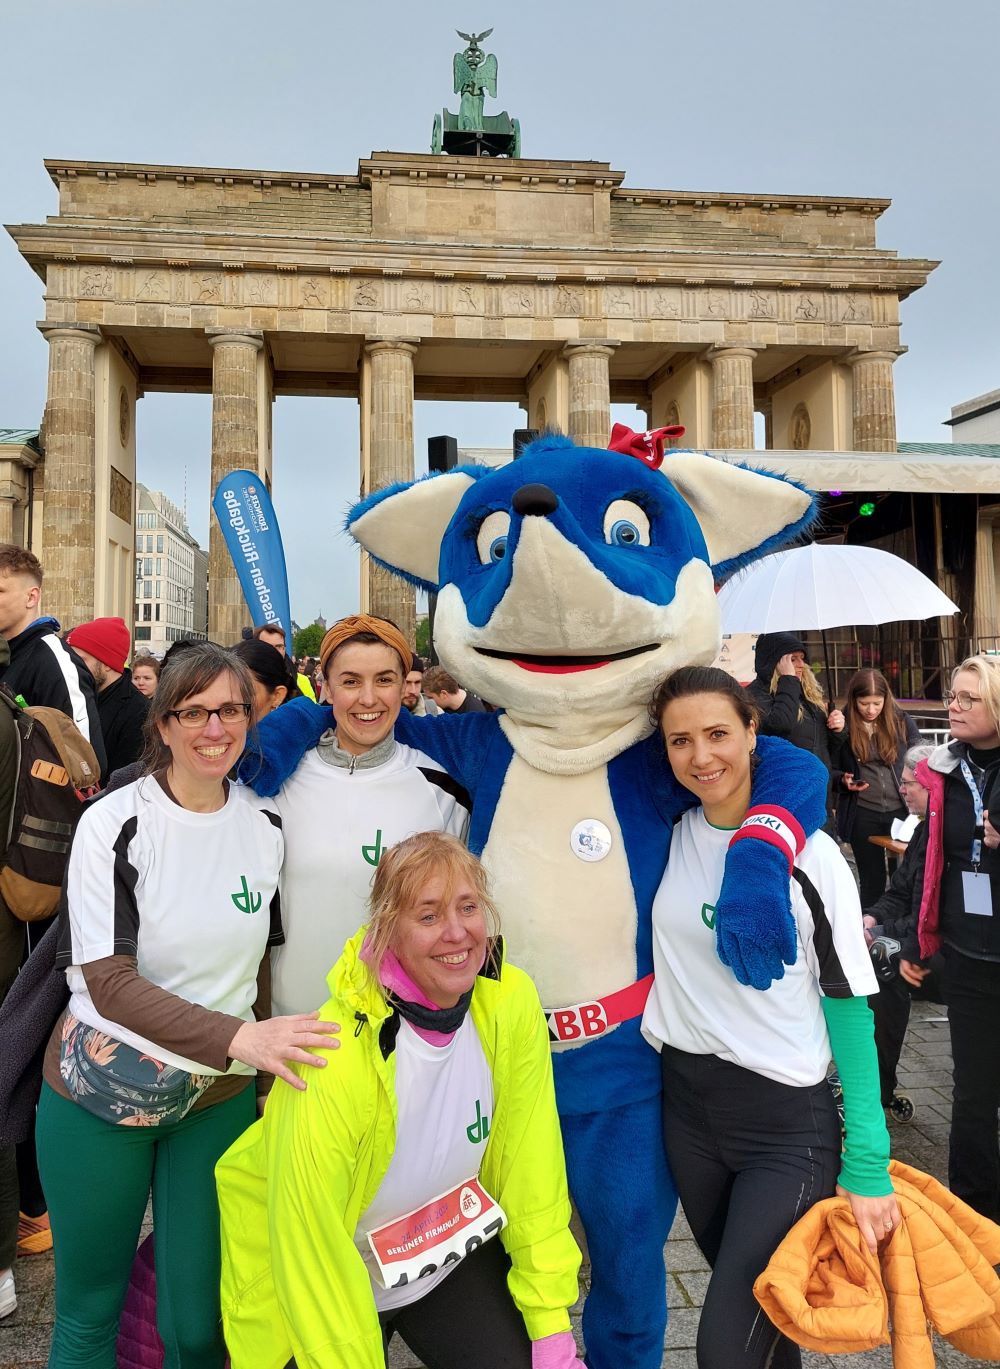 Das Bild ist ein Foto von 4 Kolleginnen die für den Deutschen Verein am Firmenlauf teilgenommen haben zusammen mit dem Maskottchen des Veranstalters. Das Maskottchen ist ein blauweißer Fuchs. Im Hintergrund sind weitere Menschen und das Brandenburger Tor zu sehen.